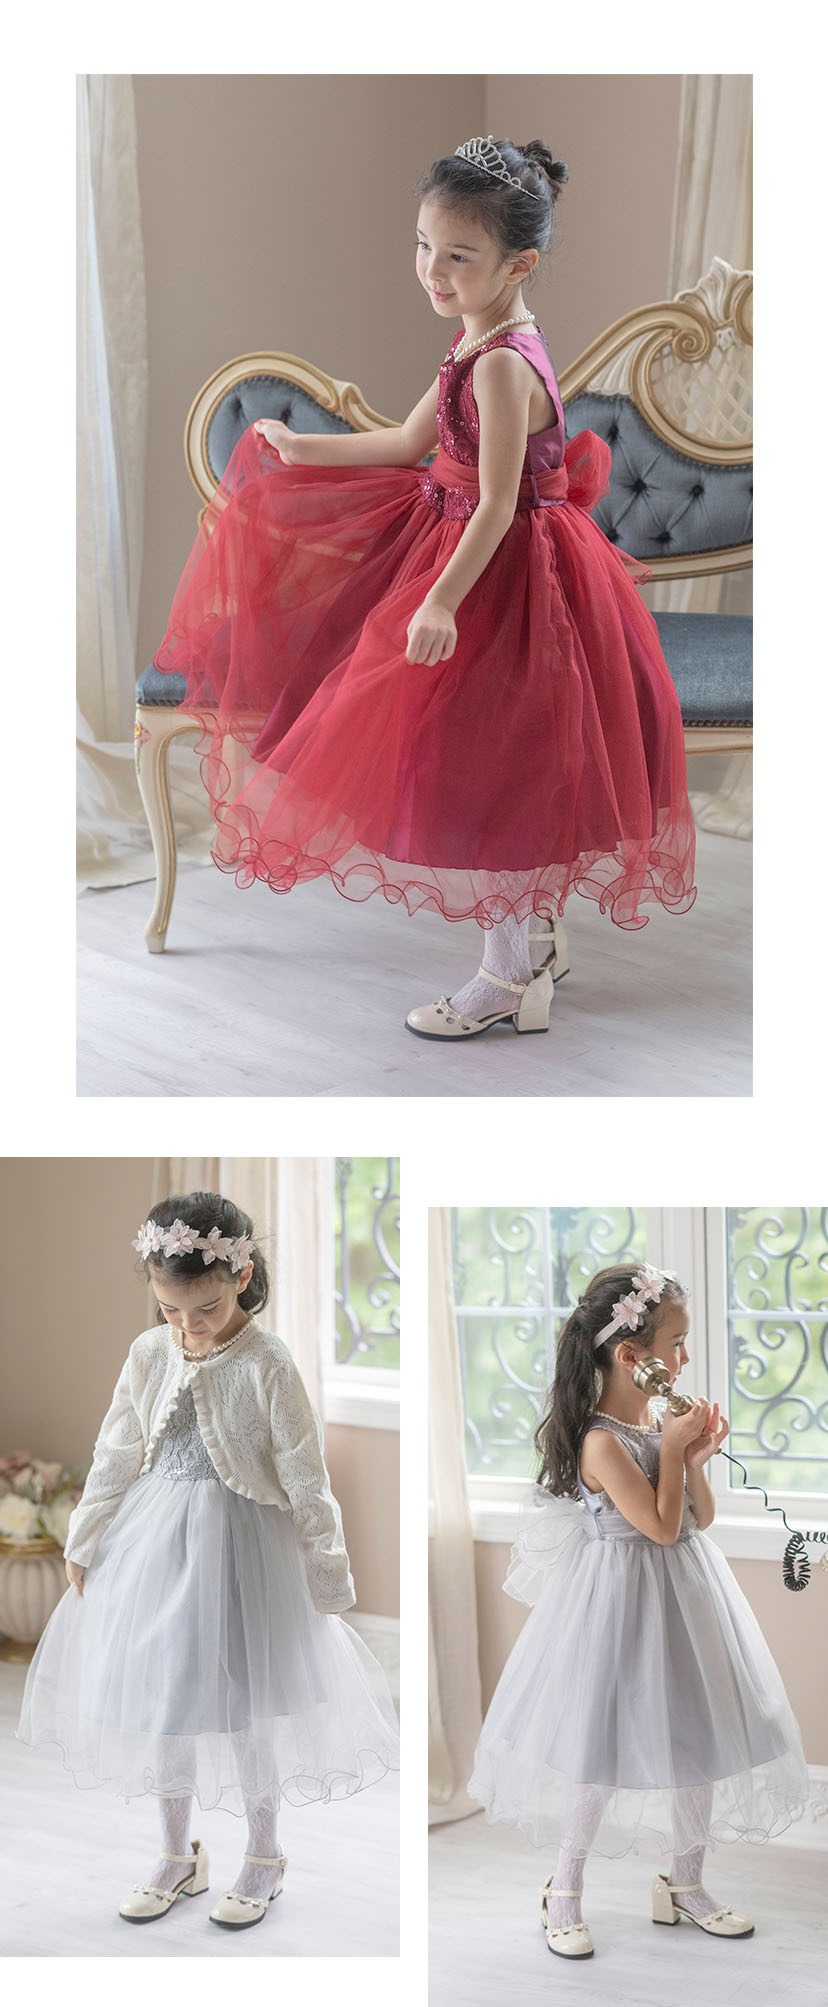 子供ドレス コスパ重視派のスパンコールレースチュールドレス キッズドレス モデル写真